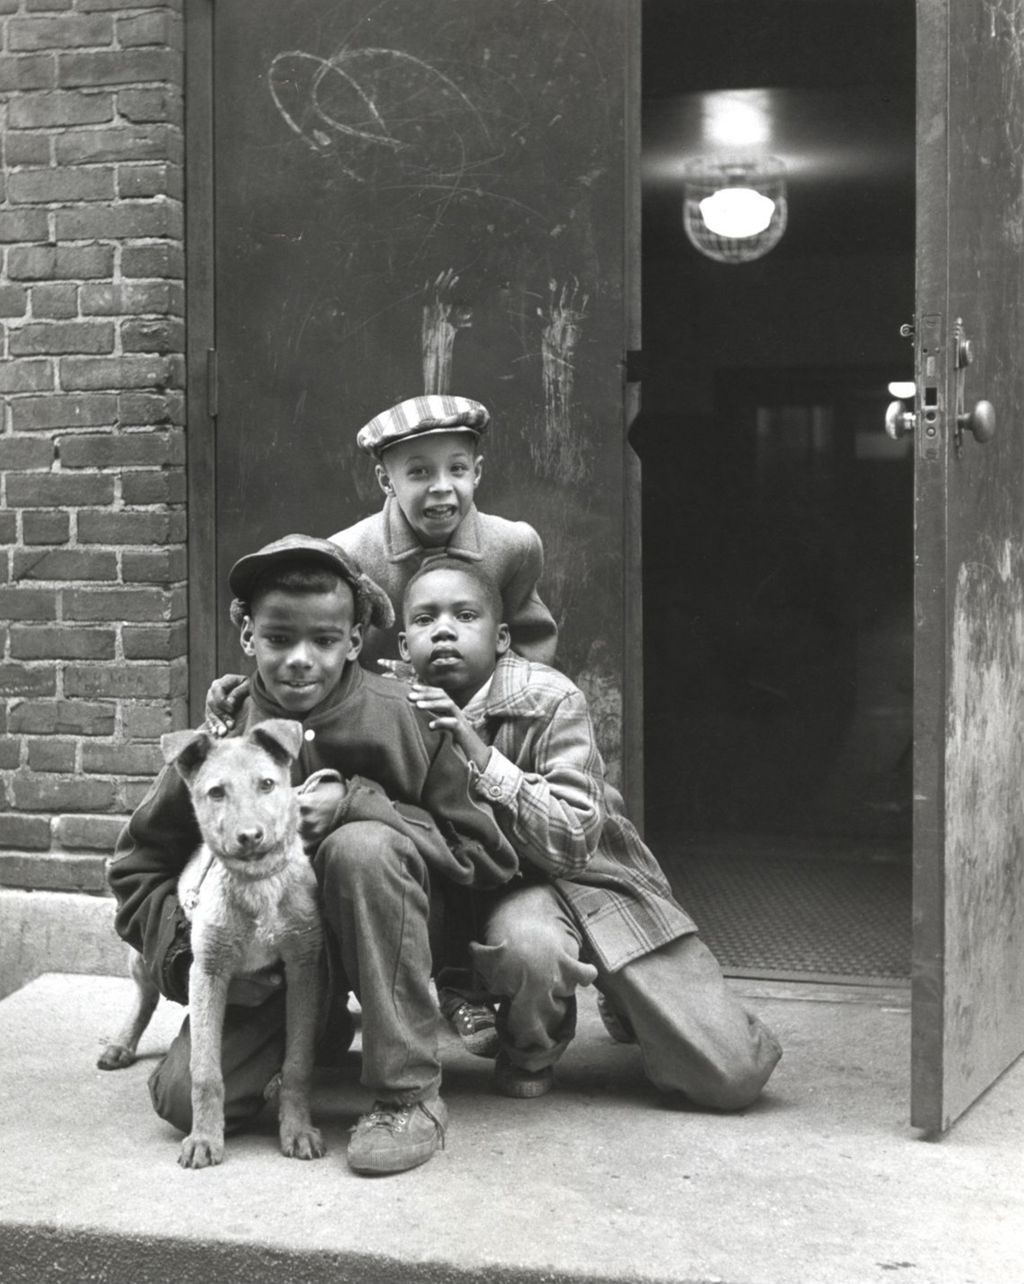 Three boys with a dog